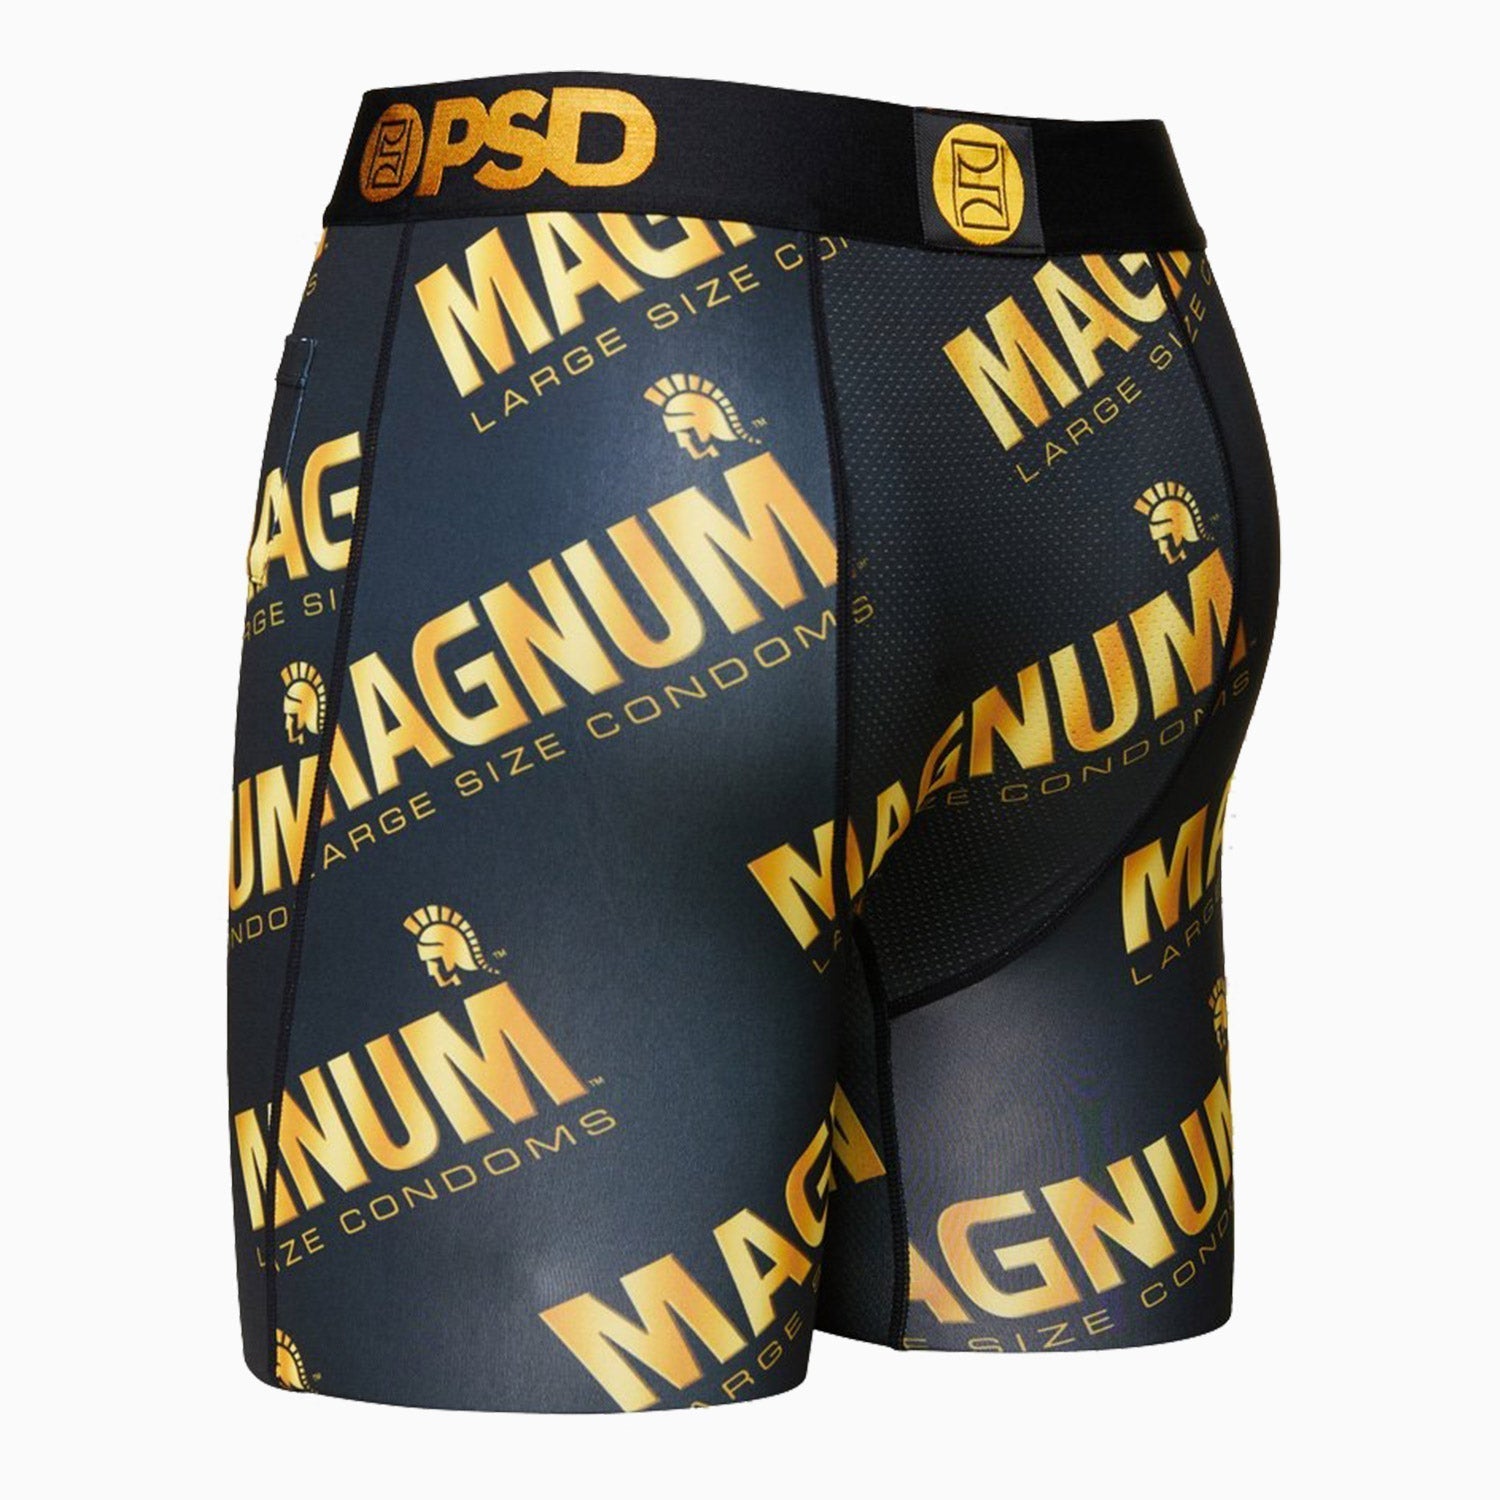 psd-underwear-mens-magnum-allover-boxer-421180020